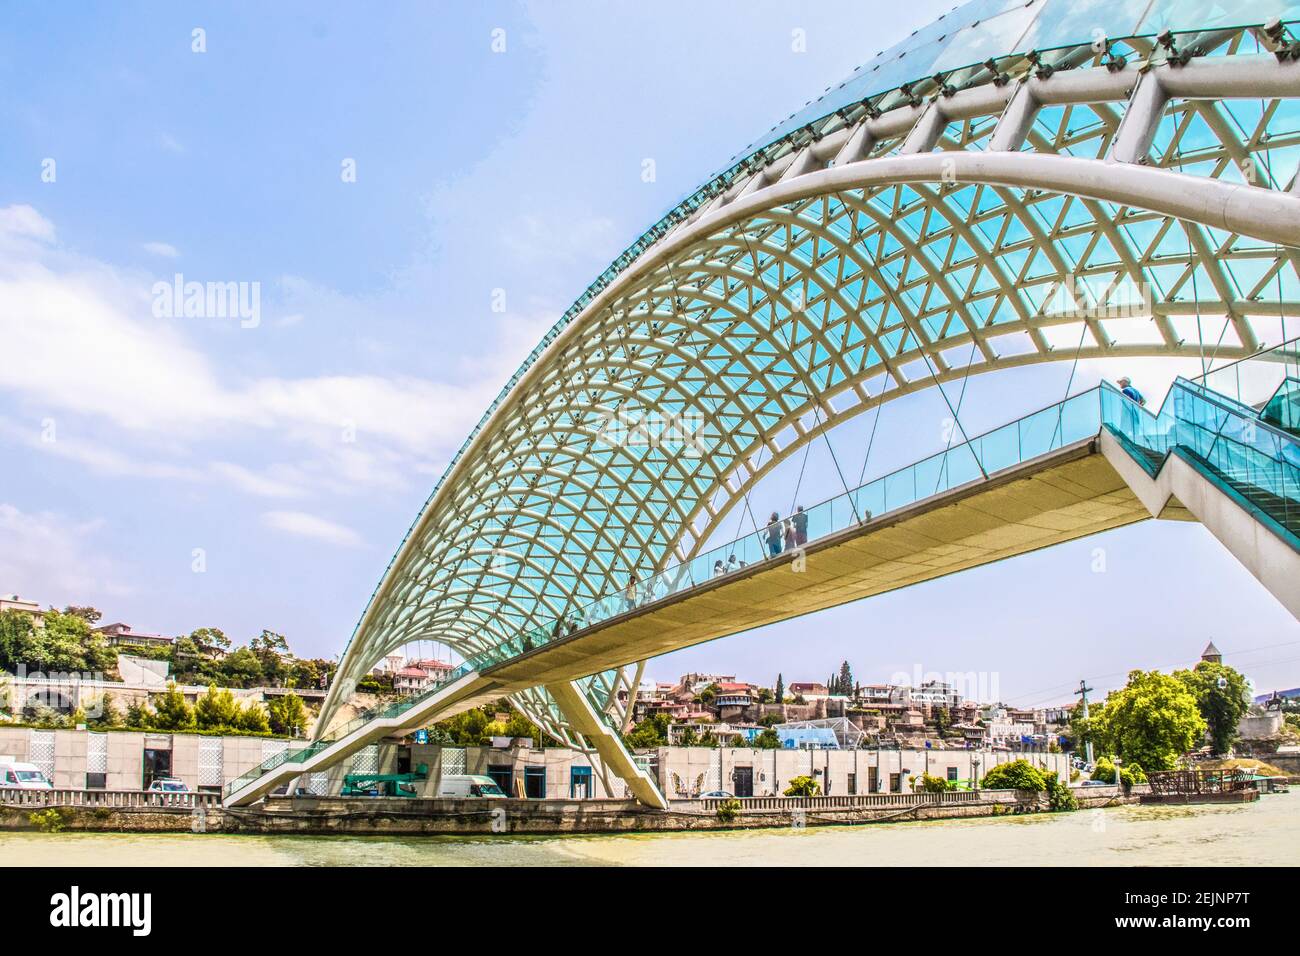 019 07 19 Tiflis Georgien - Brücke des Friedens - eine bogenförmige Fußgängerbrücke aus Stahl und Glas Konstruktion beleuchtet mit zahlreichen LEDs über dem K Stockfoto